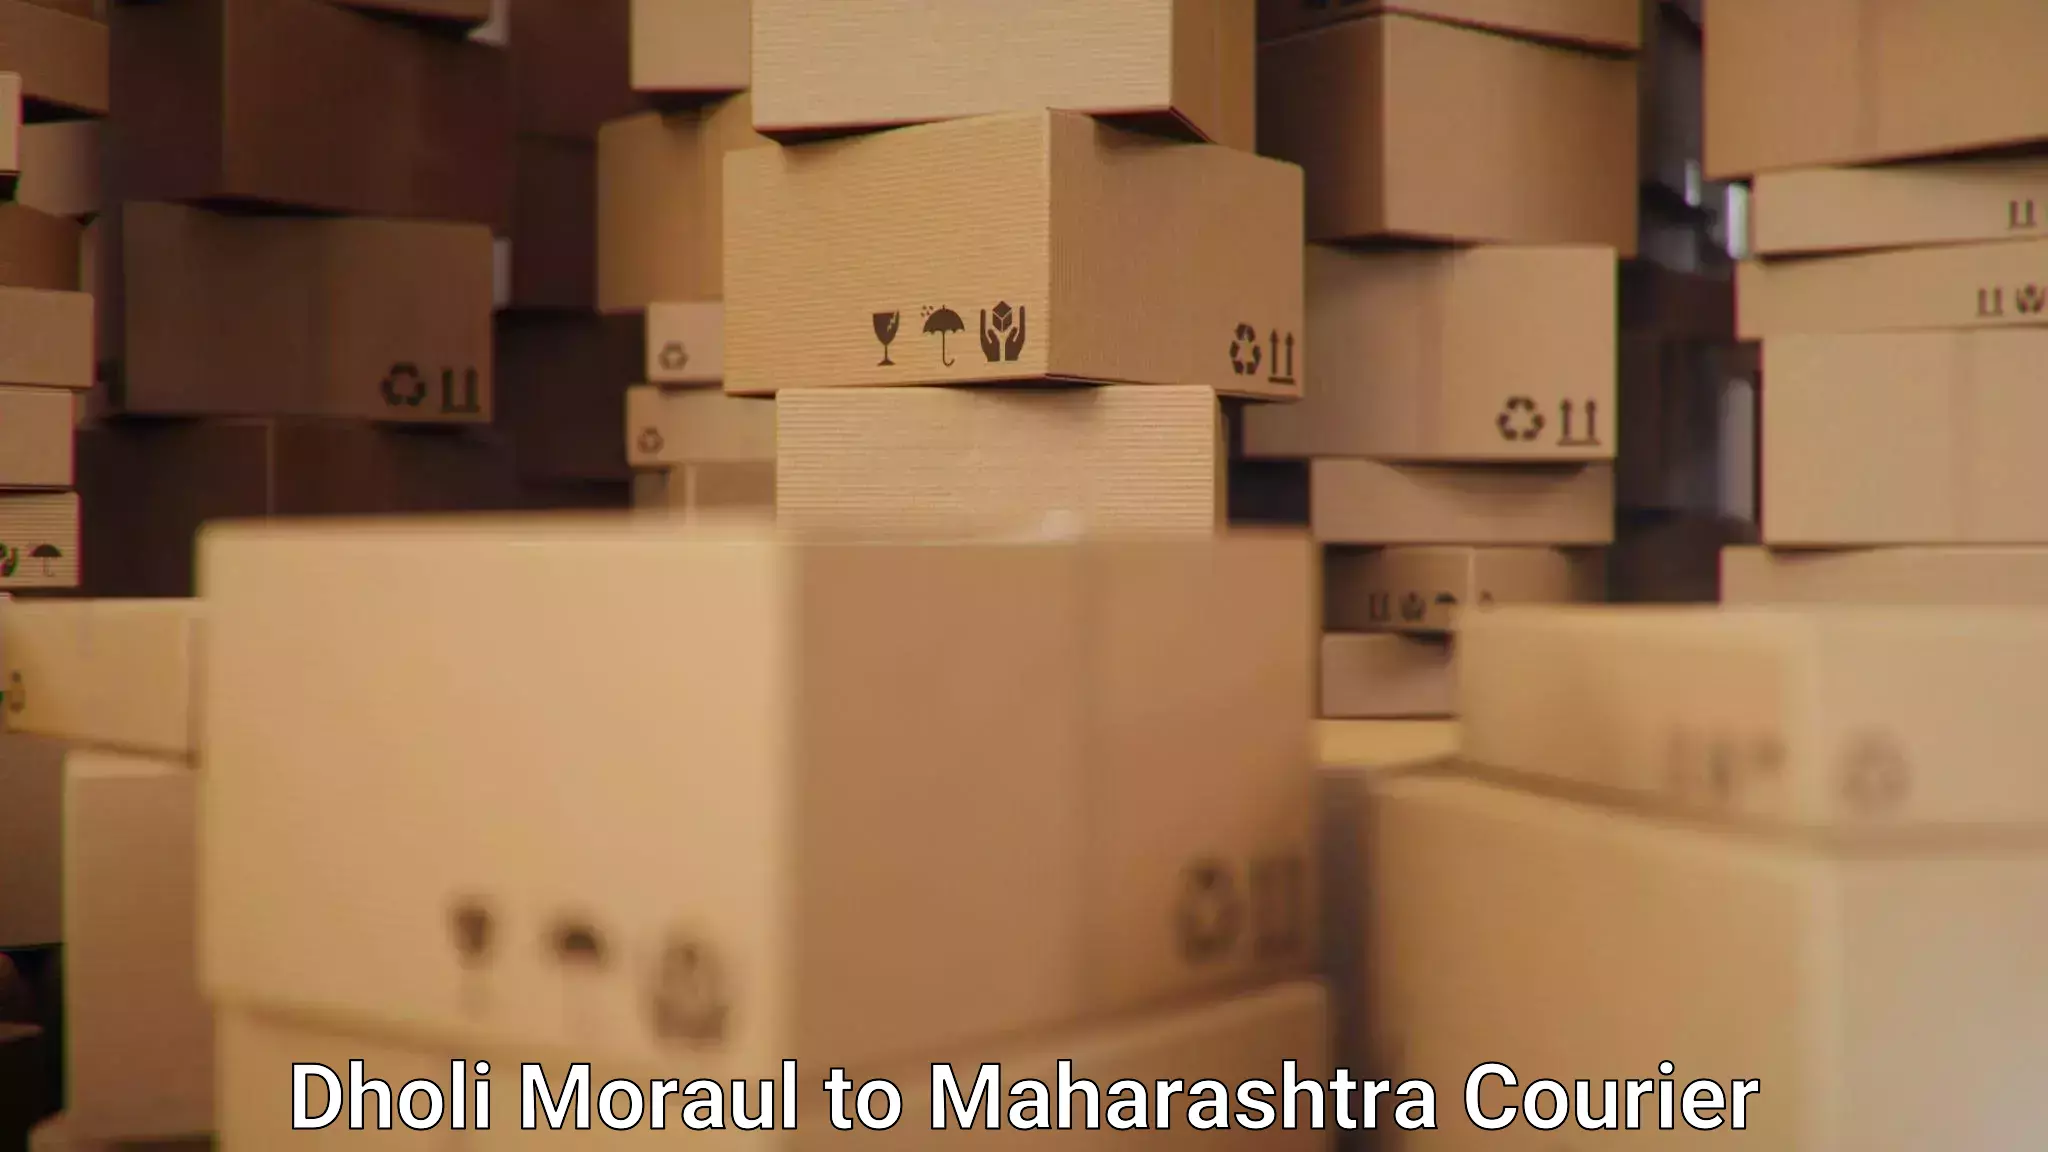 Global shipping solutions Dholi Moraul to Bhusawal